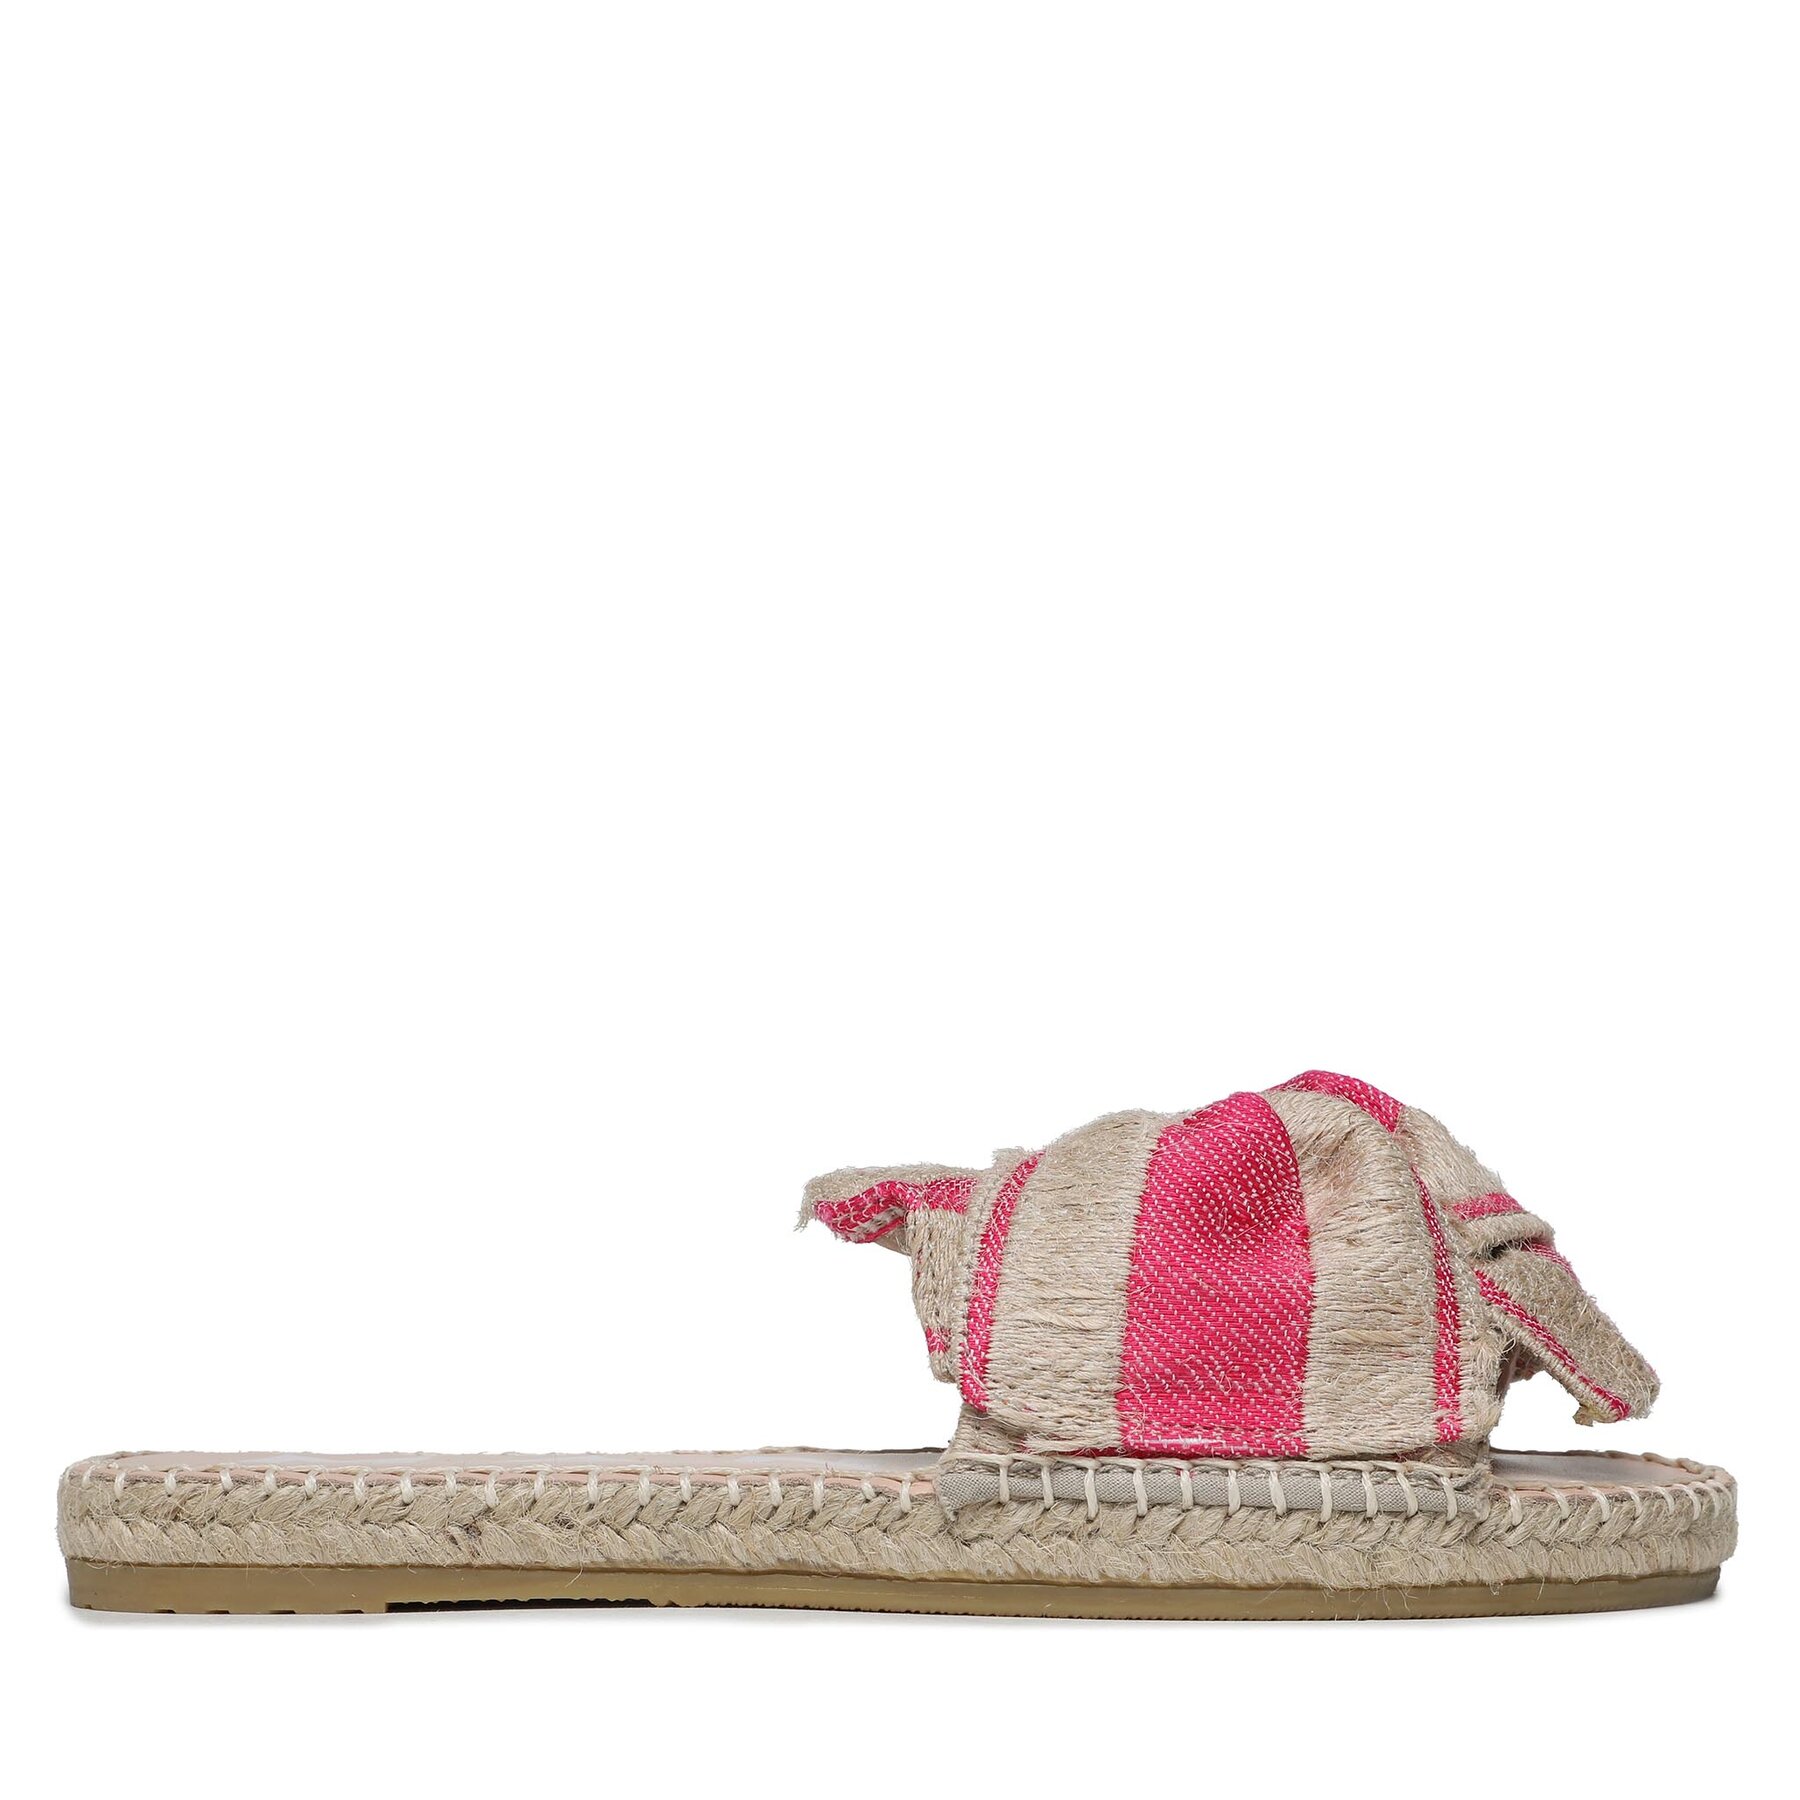 Espadrilles Manebi Sandals With Knot G 4.5 JK Bold Pink Stripes On Natural von Manebi